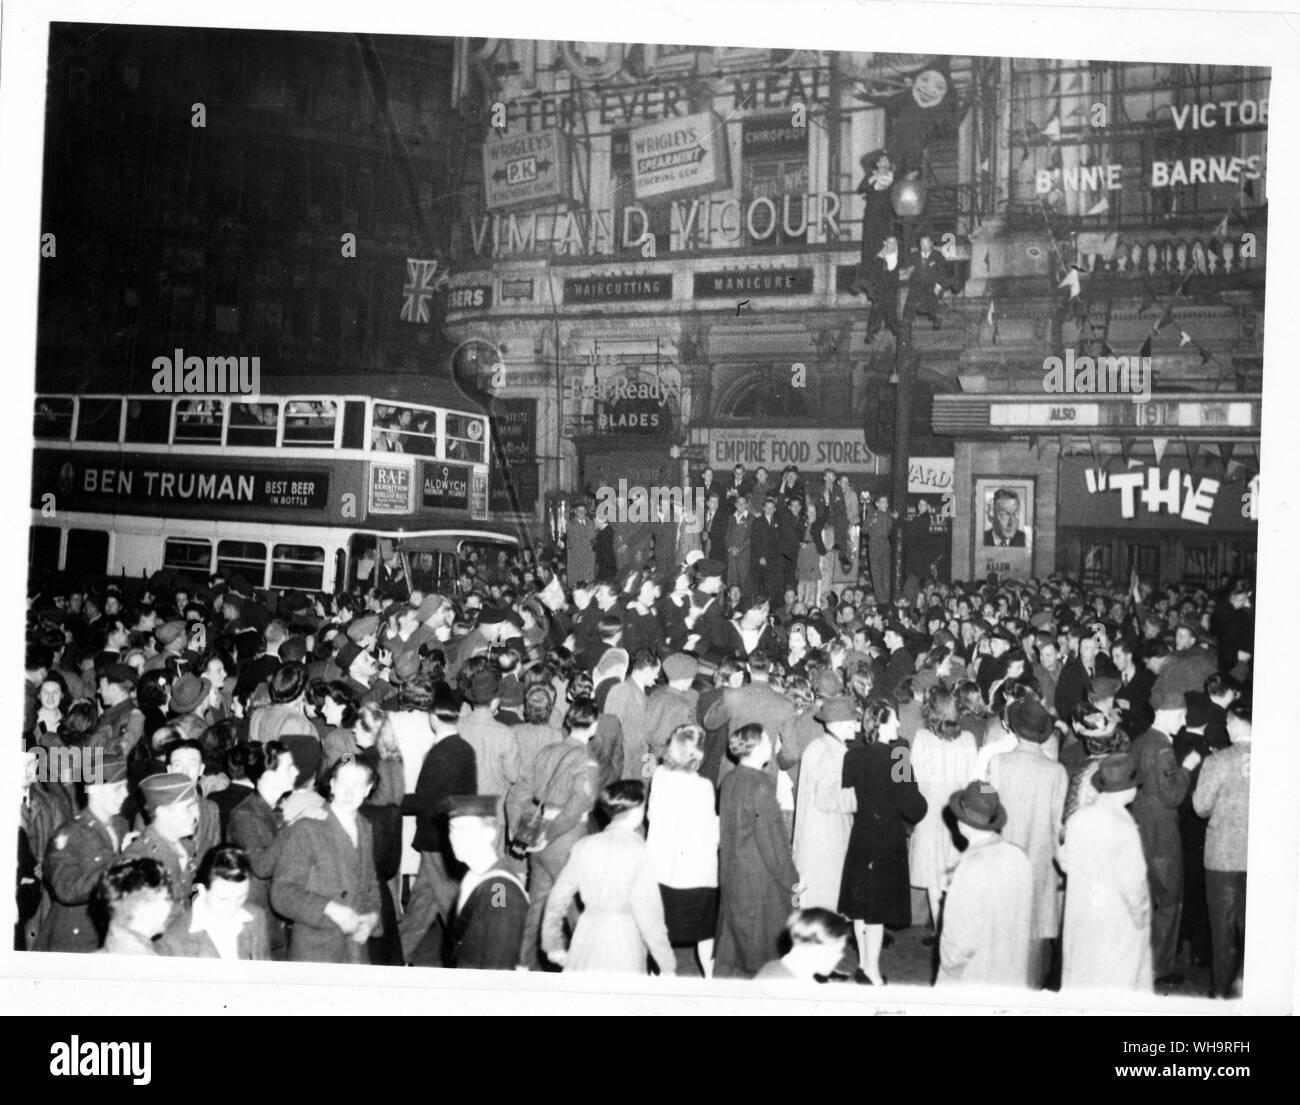 7 Mqy 1945: eine Szene in Piccadilly Circus beim Londoner verrückt vor Freude über die Nachricht von der deutschen Kapitulation an Kapitulation im Zweiten Weltkrieg. Stockfoto